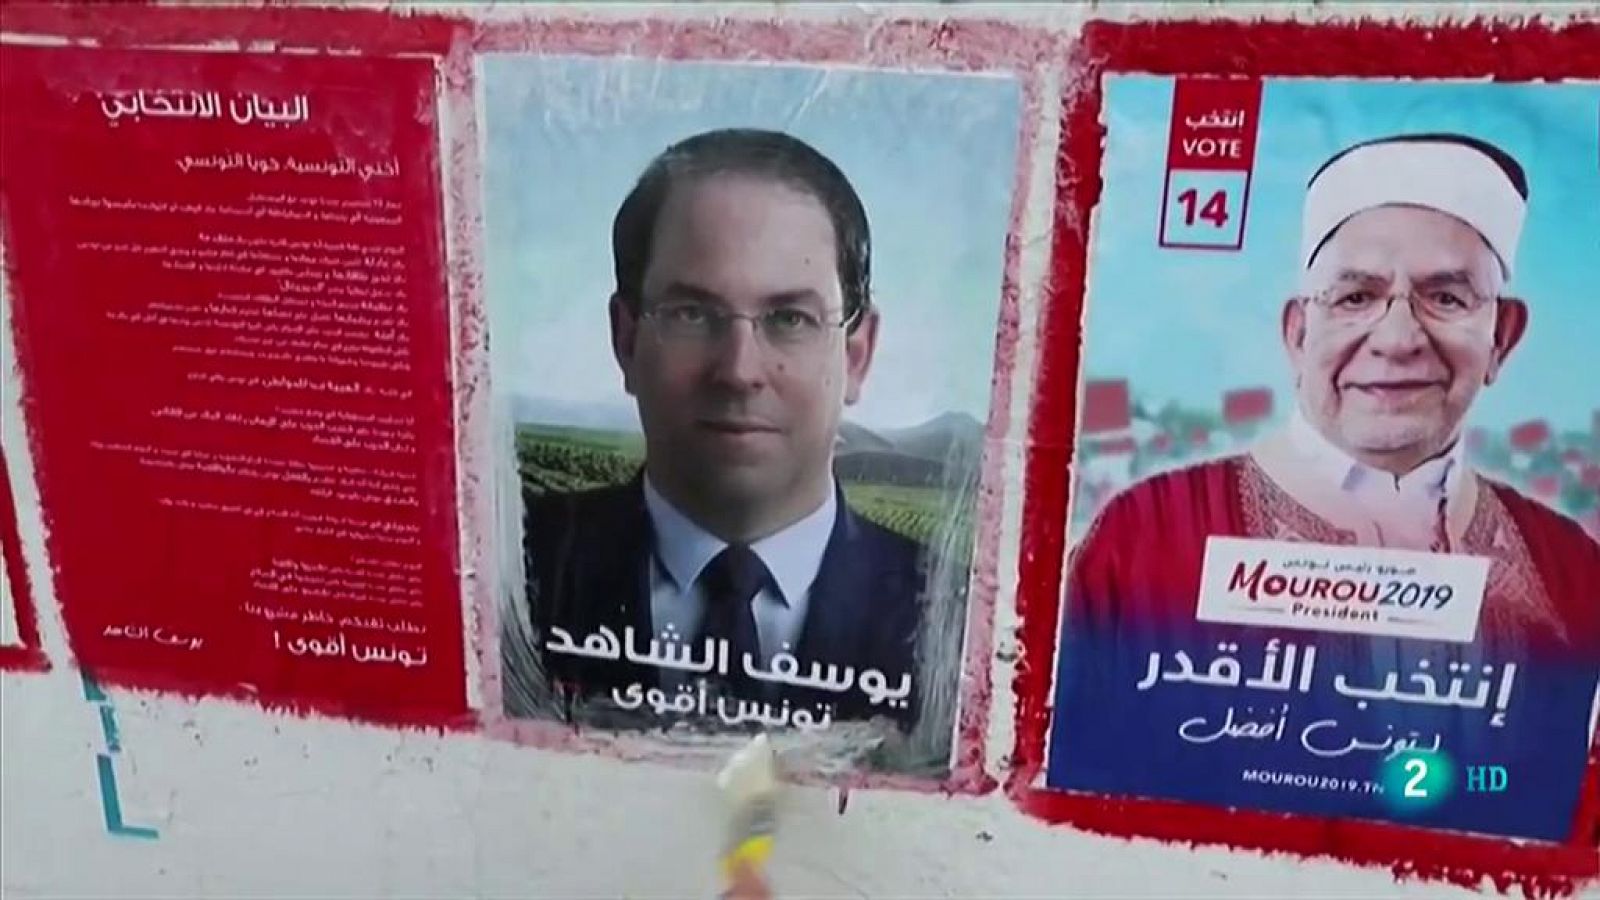 Elecciones presidenciales en Túnez